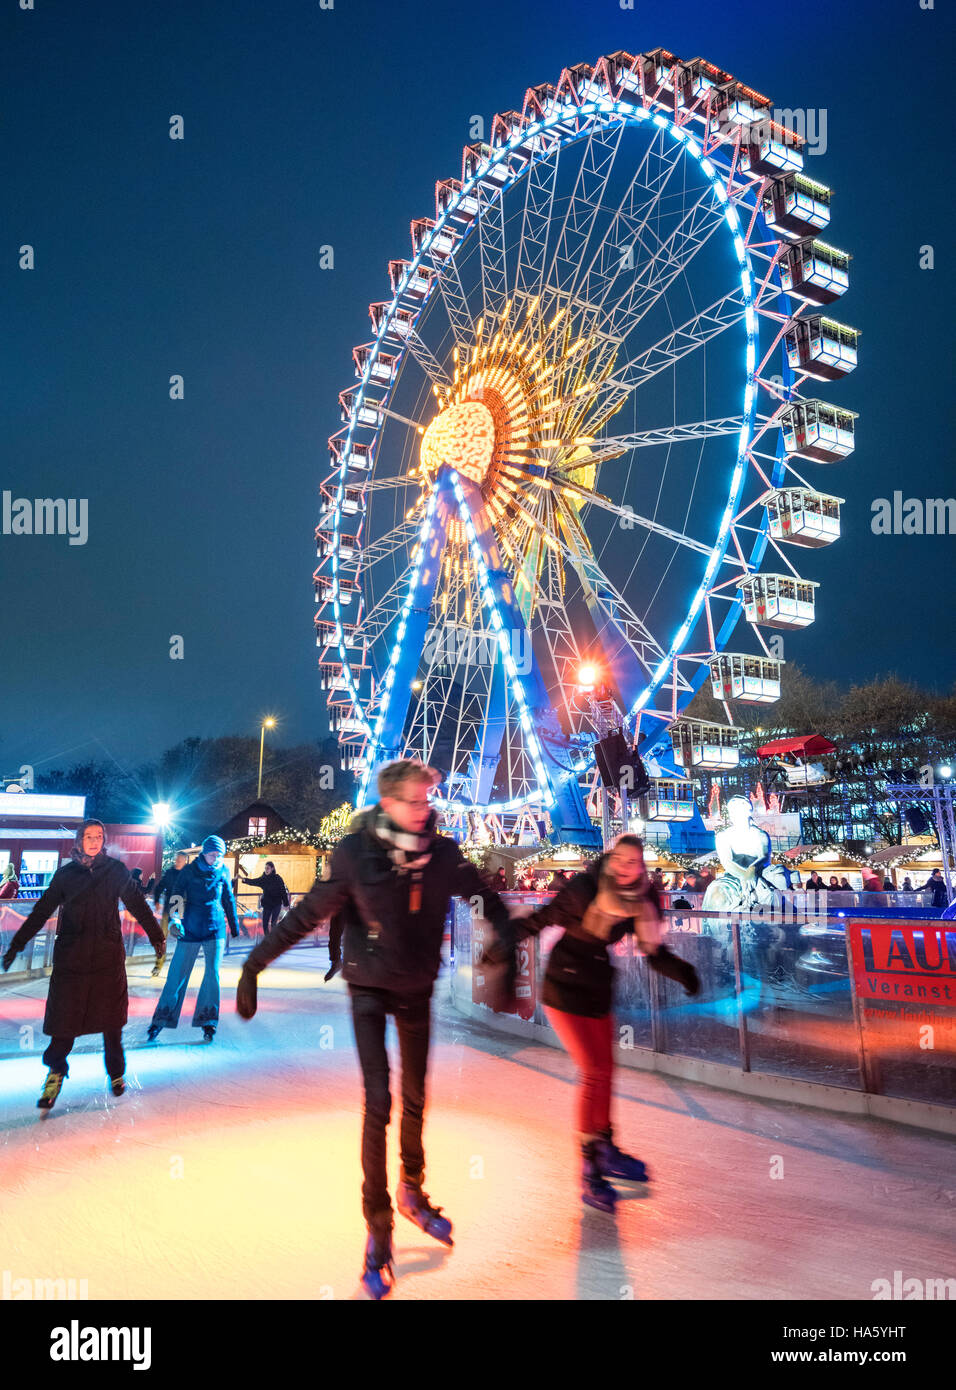 La pista de patinaje sobre hielo en el tradicional Mercado de Navidad en la plaza Alexanderplatz de Berlín Mitte Alemania 2016 Foto de stock